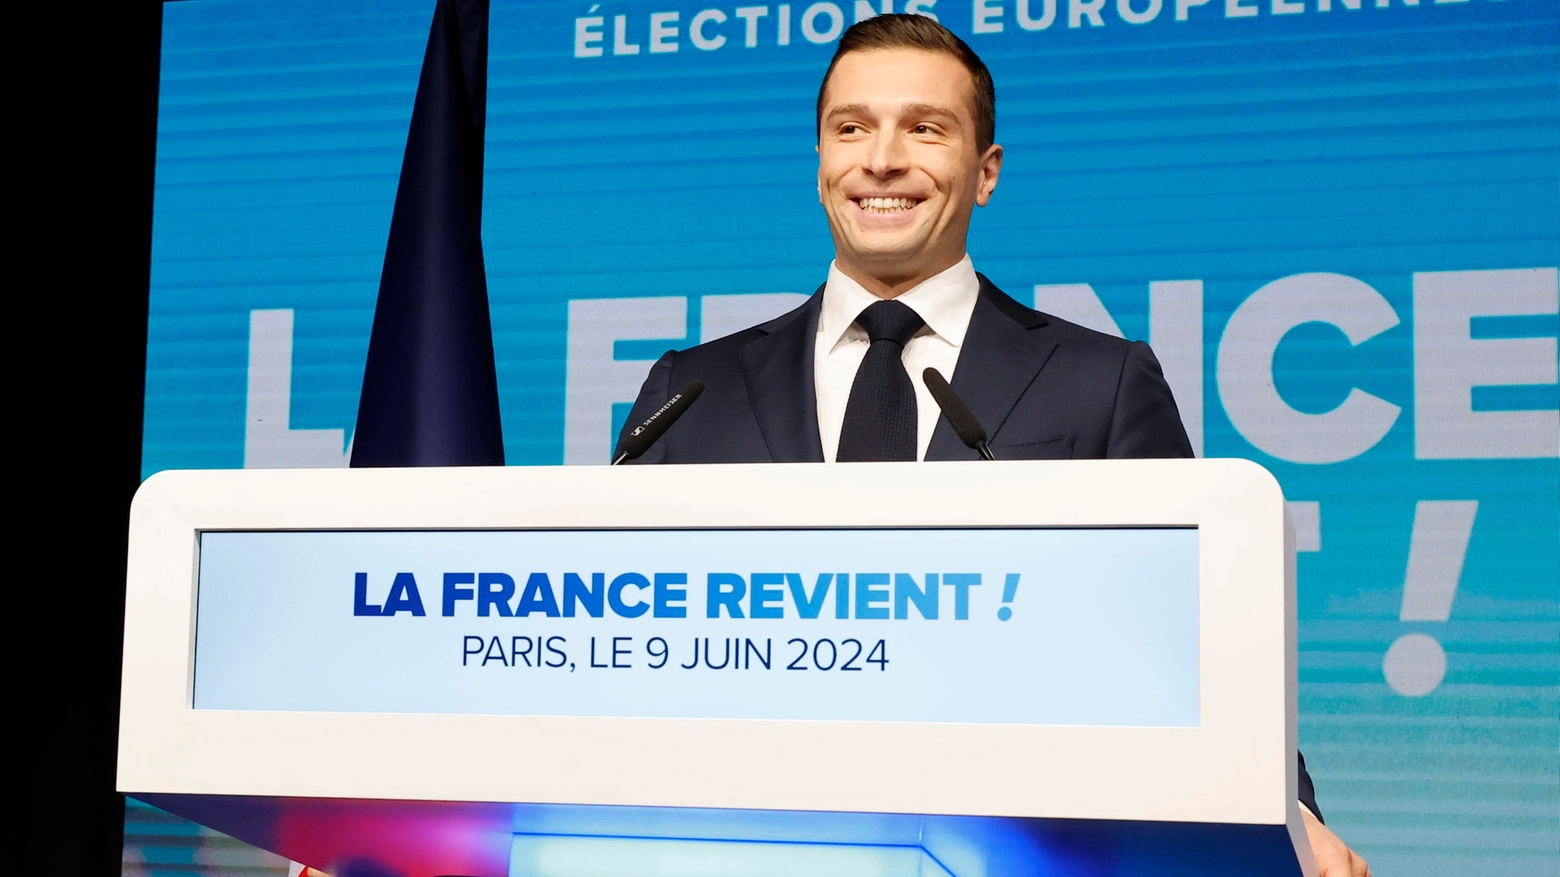 Subentrato a Marine Le Pen alla guida del partito di estrema destra, il 28enne ha sbancato alle Europee battendo il presidente Emmanuel Macron